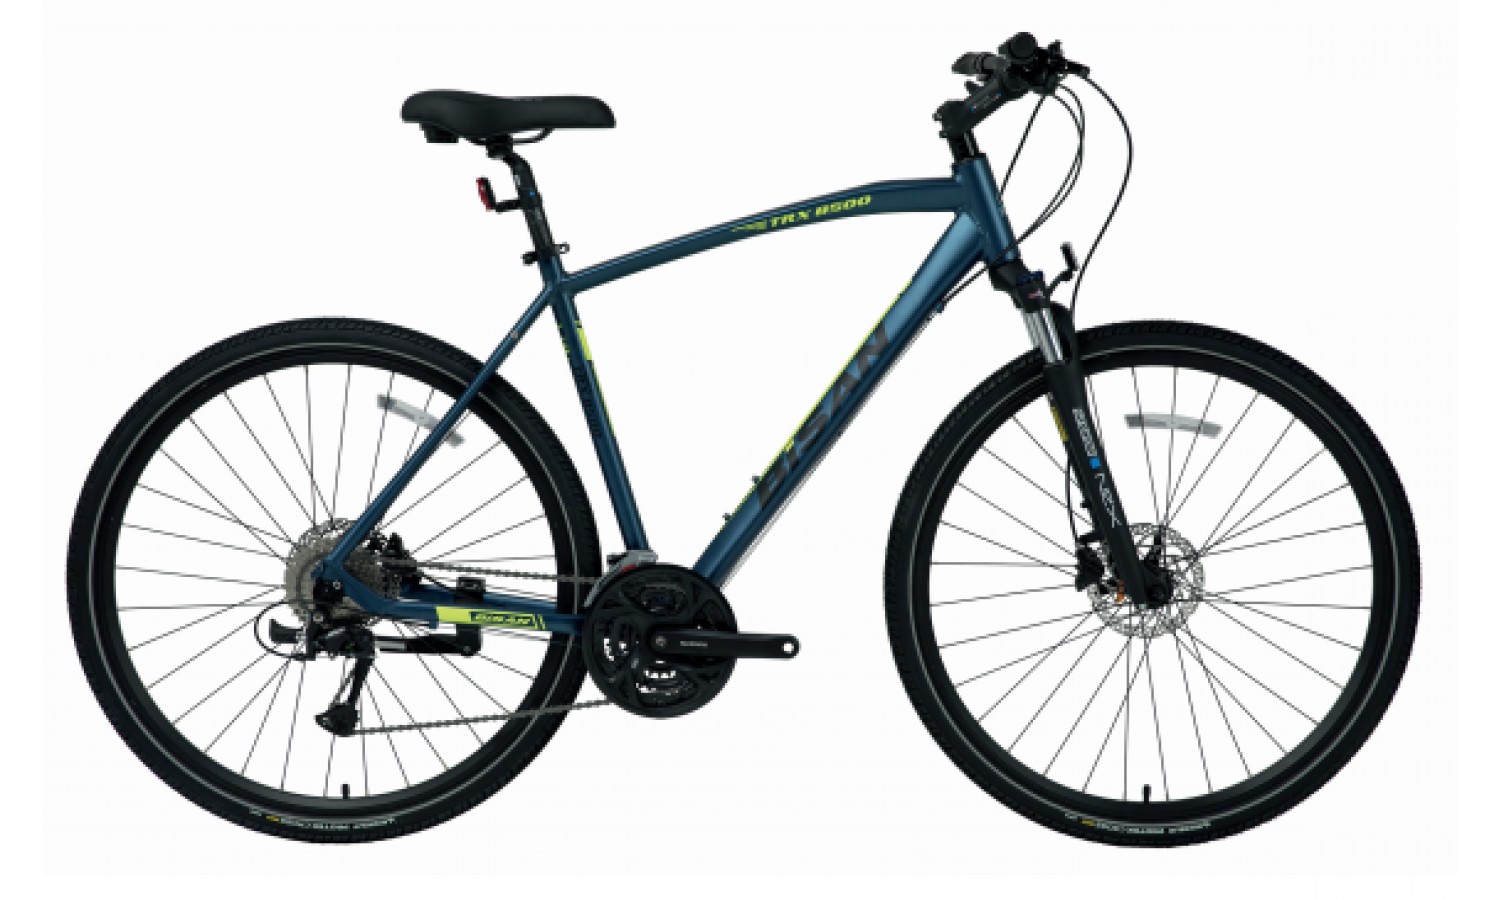 Bisan Trx 8500 28 Hd Trekking Bisiklet (Kahverengi Siyah)